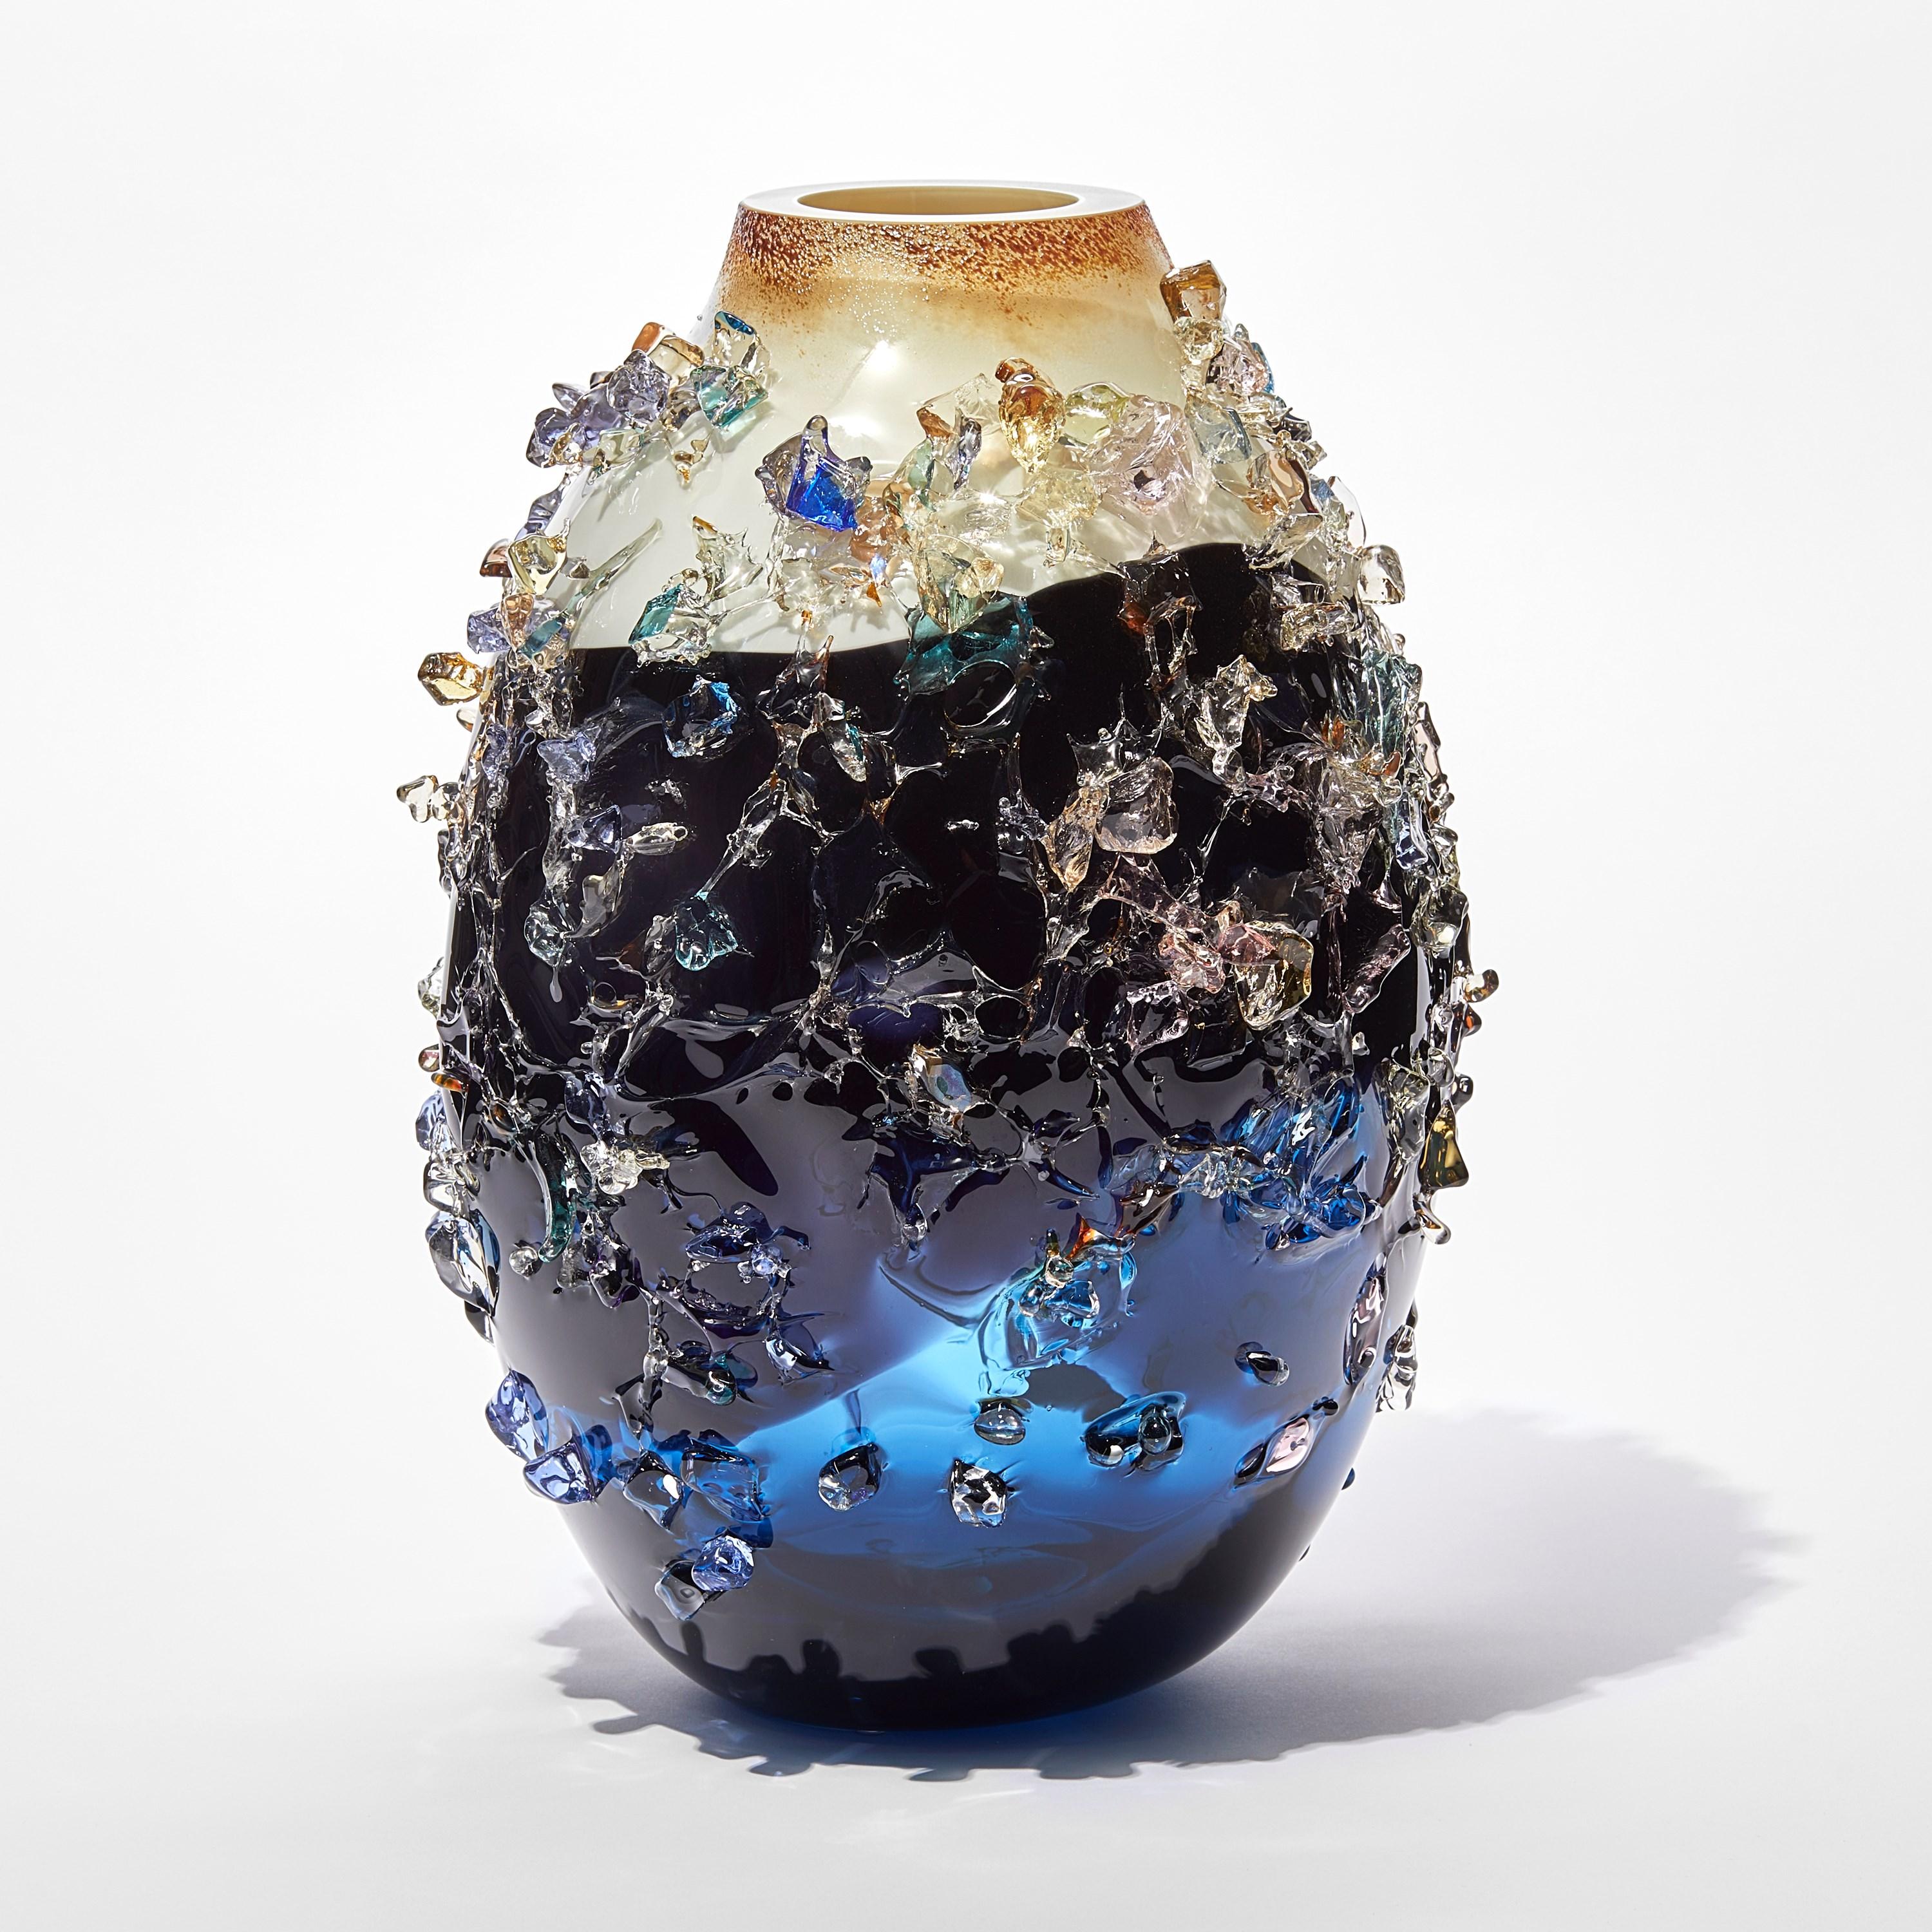 Sakura TFO23031 ist eine einzigartige blaue, indigoblaue, cremefarbene und mehrfarbige Vase aus mundgeblasenem, skulpturalem Kunstglas, die mit organischen Glasscherben des niederländischen Künstlers Maarten Vorlijk verziert ist. Das Stück ist